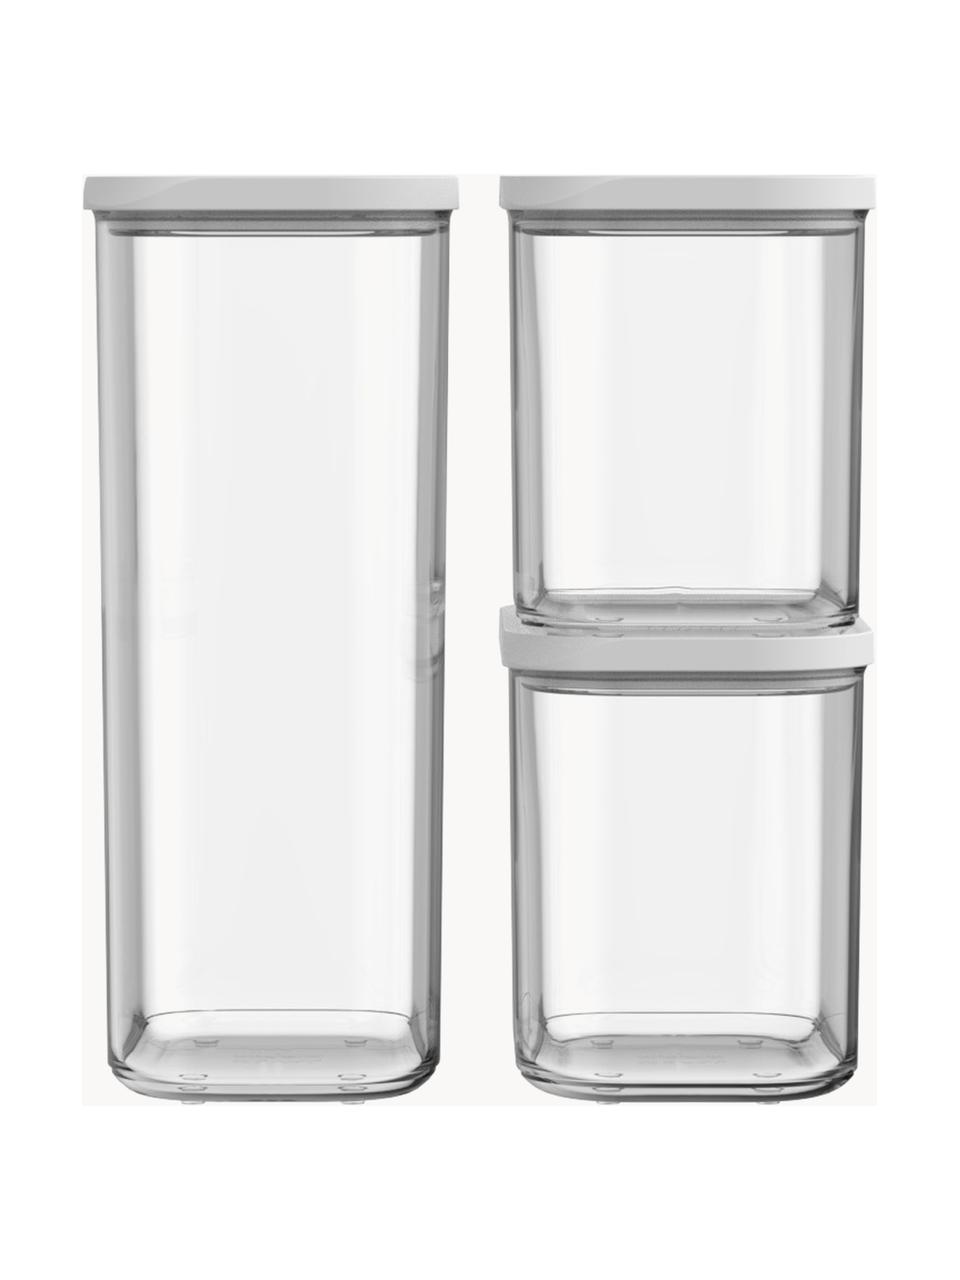 Set di 3 contenitori Modula, Plastica, senza BPA, Bianco, trasparente, Set in varie misure